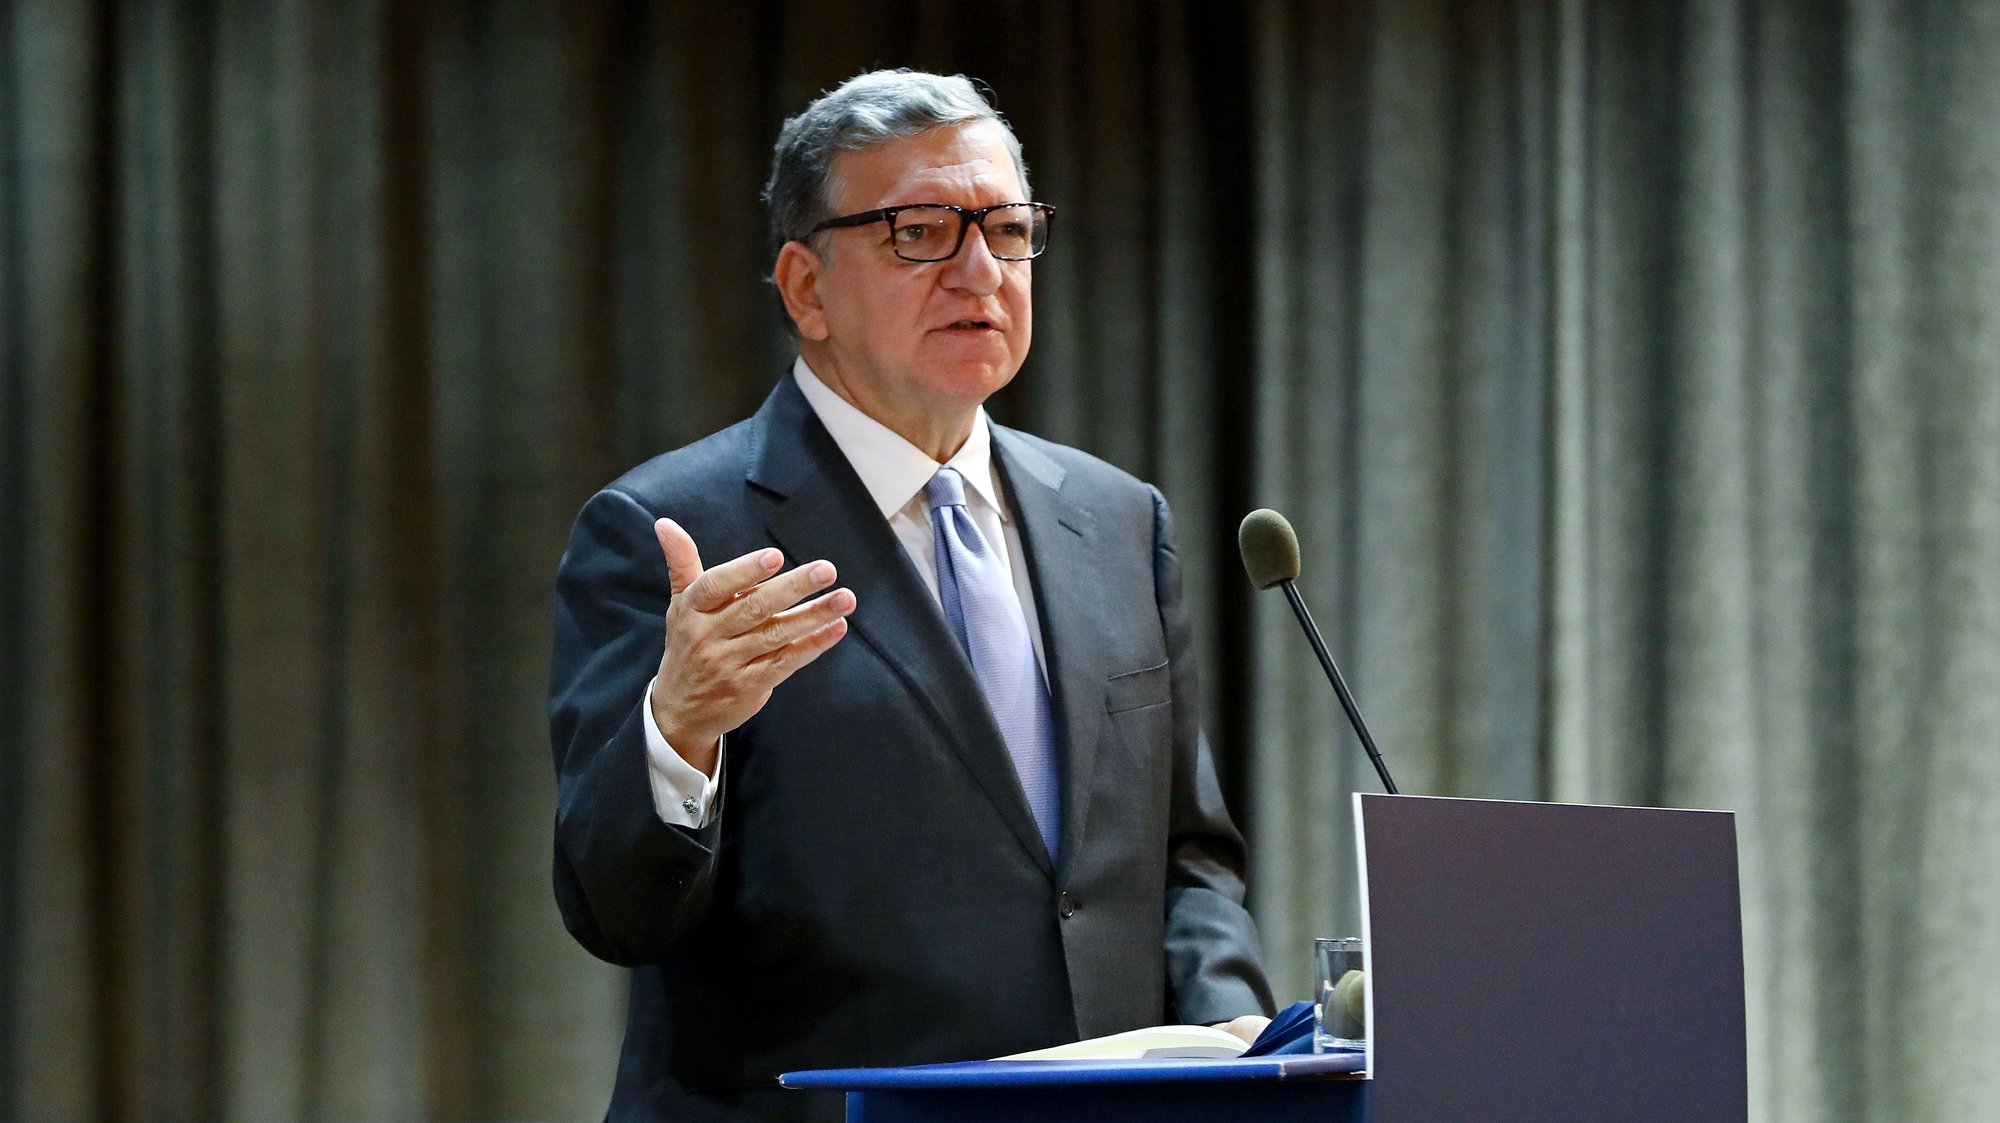 O diretor do Centro de Estudos Europeus, José Manuel Durão Barroso, intervém na conferência “Presidência do Conselho da União Europeia 2021”, na Universidade Católica, em Lisboa, 23 de novembro de 2020. Portugal assumirá a Presidência do Conselho da União Europeia no primeiro semestre de 2021, sucedendo à Alemanha. ANTÓNIO PEDRO SANTOS/LUSA